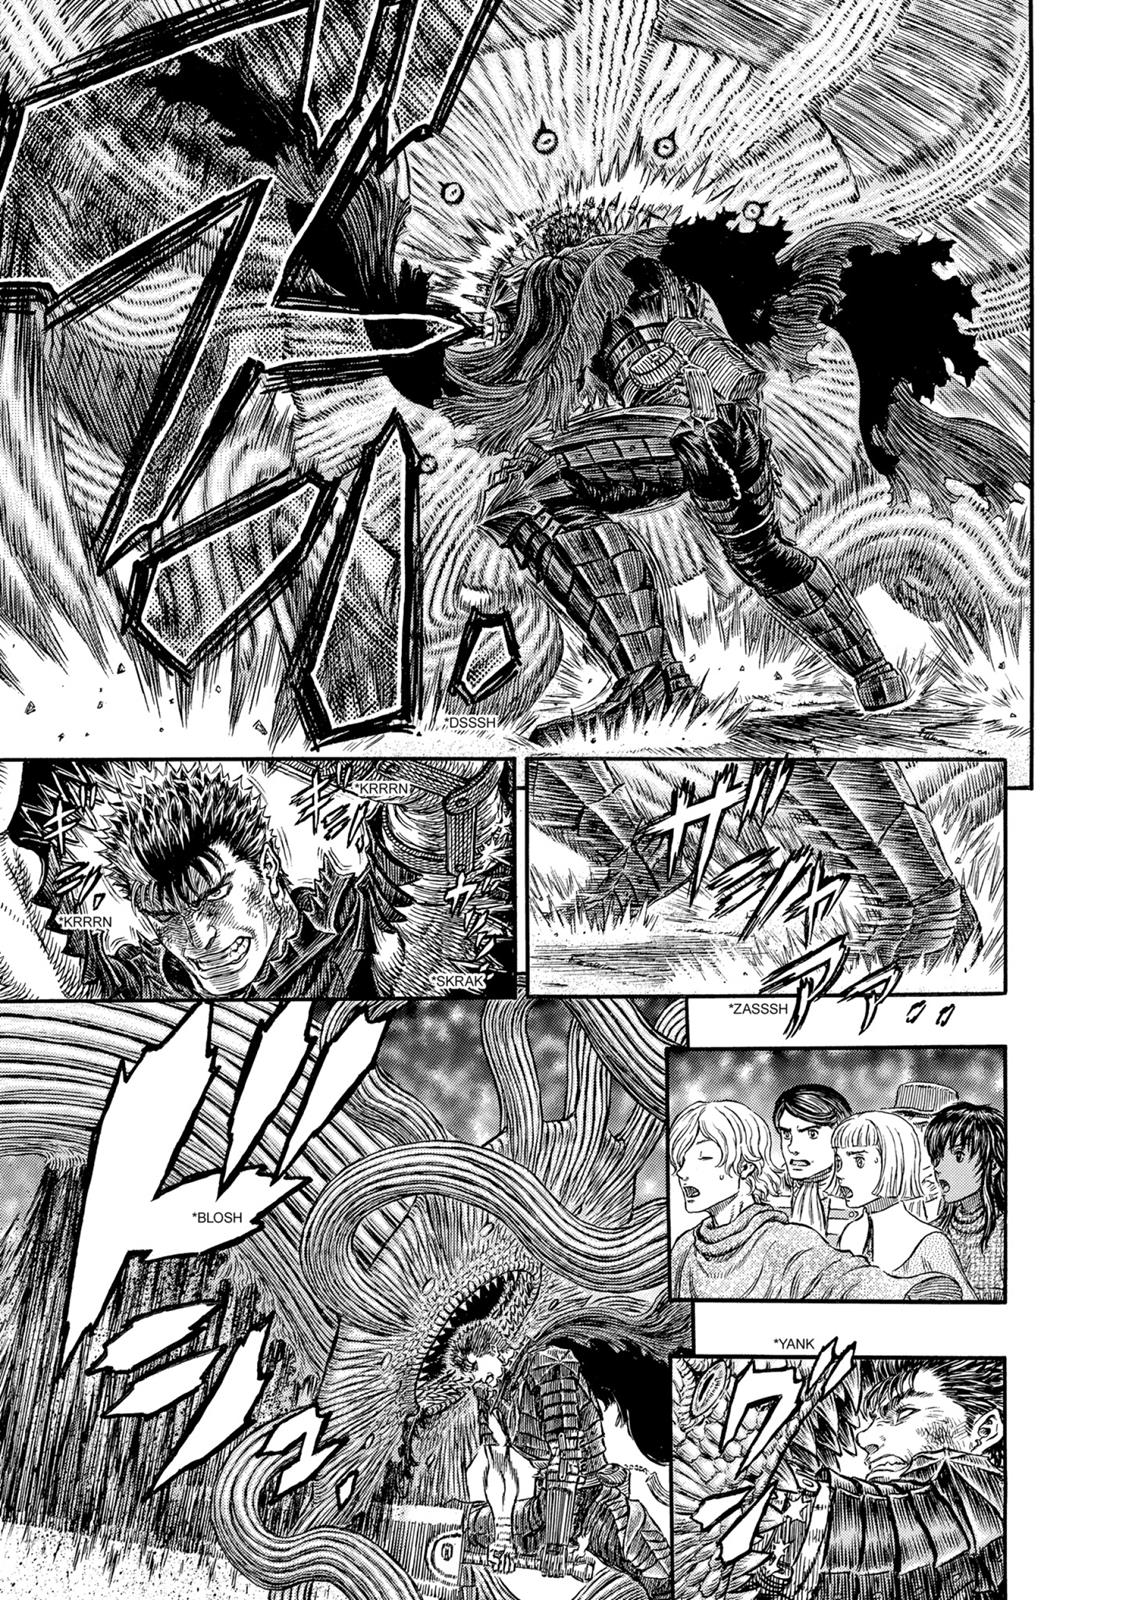 Berserk Manga Chapter 314 image 16